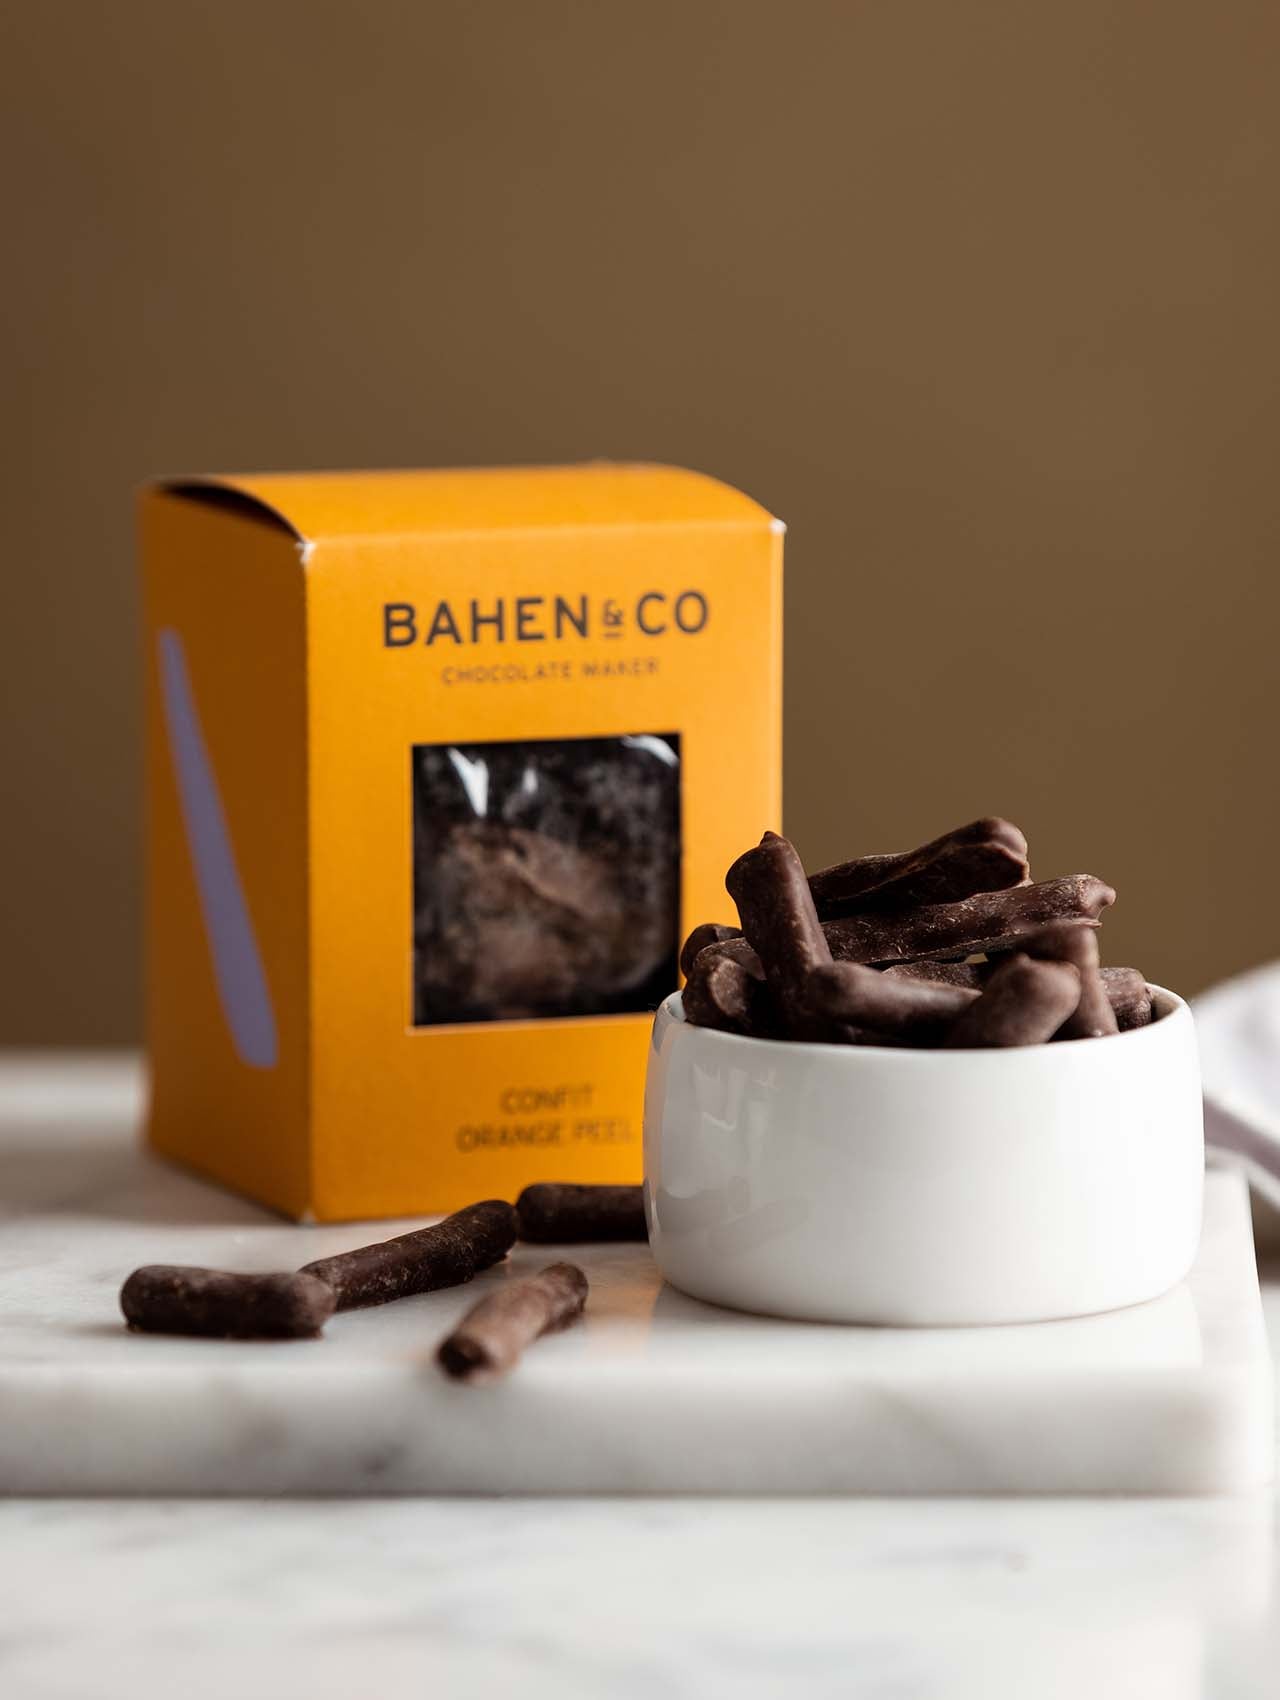 Bahen & Co Chocolate Orange Confit